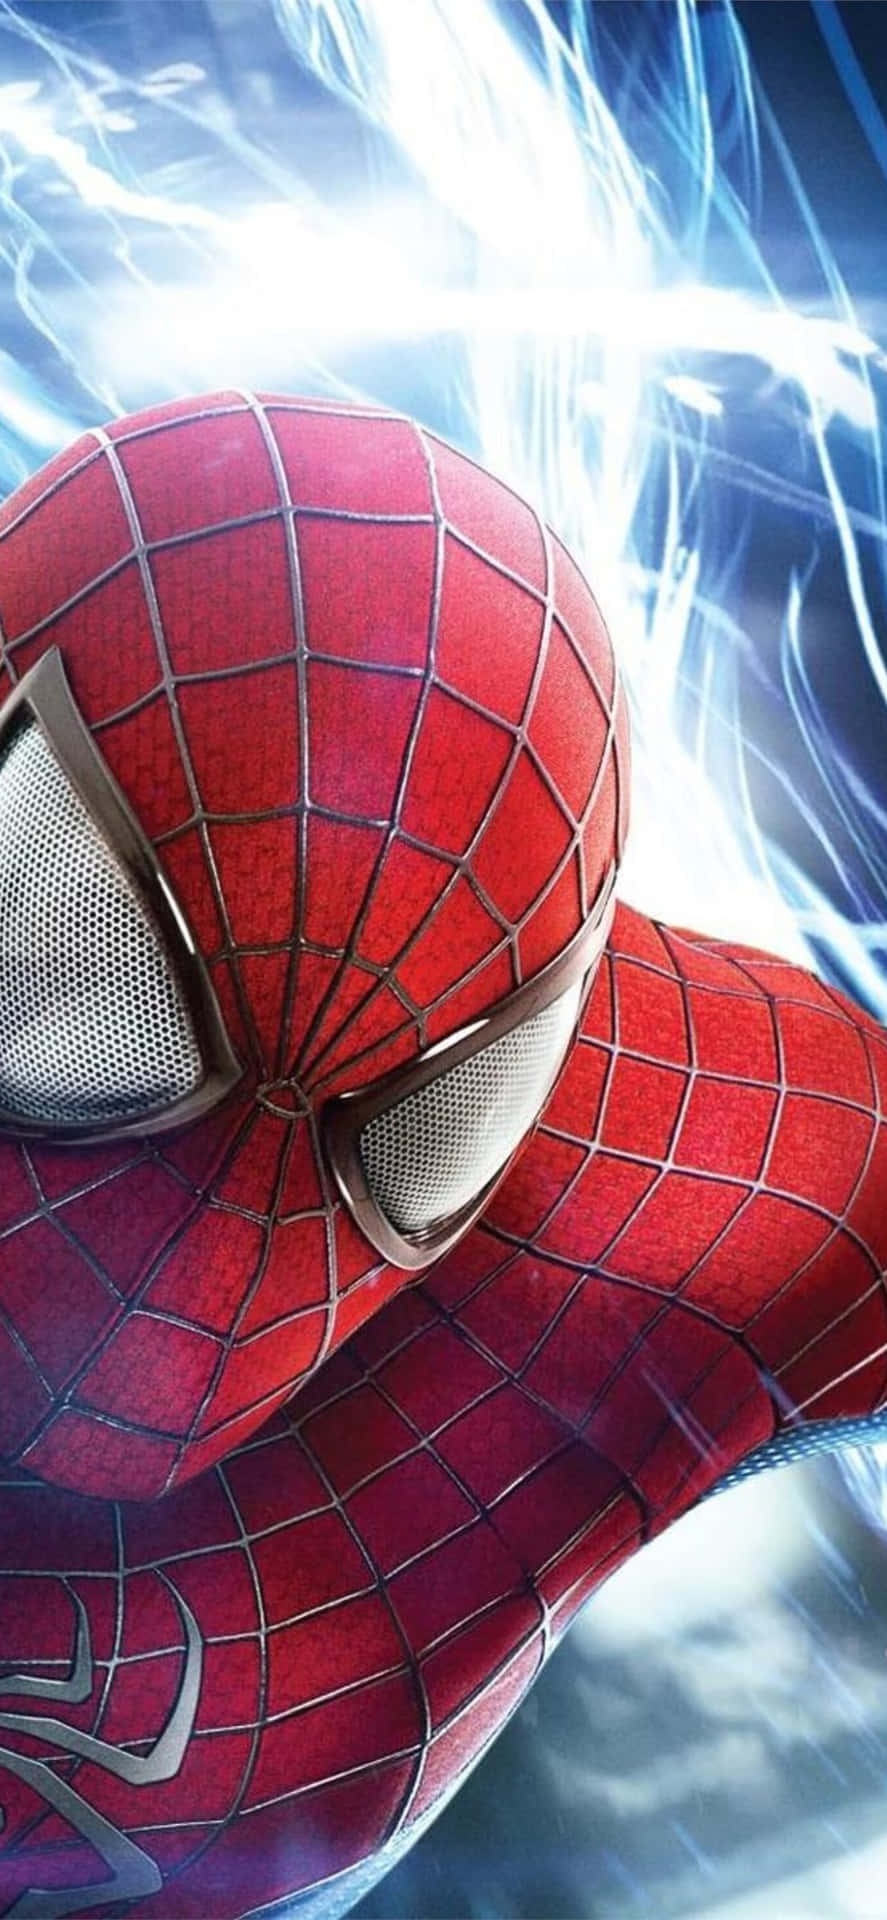 Bringensie Ihren Lieblings-marvel-avenger Zum Leben Mit Dem Erstaunlichen Spider-man Iphone. Wallpaper